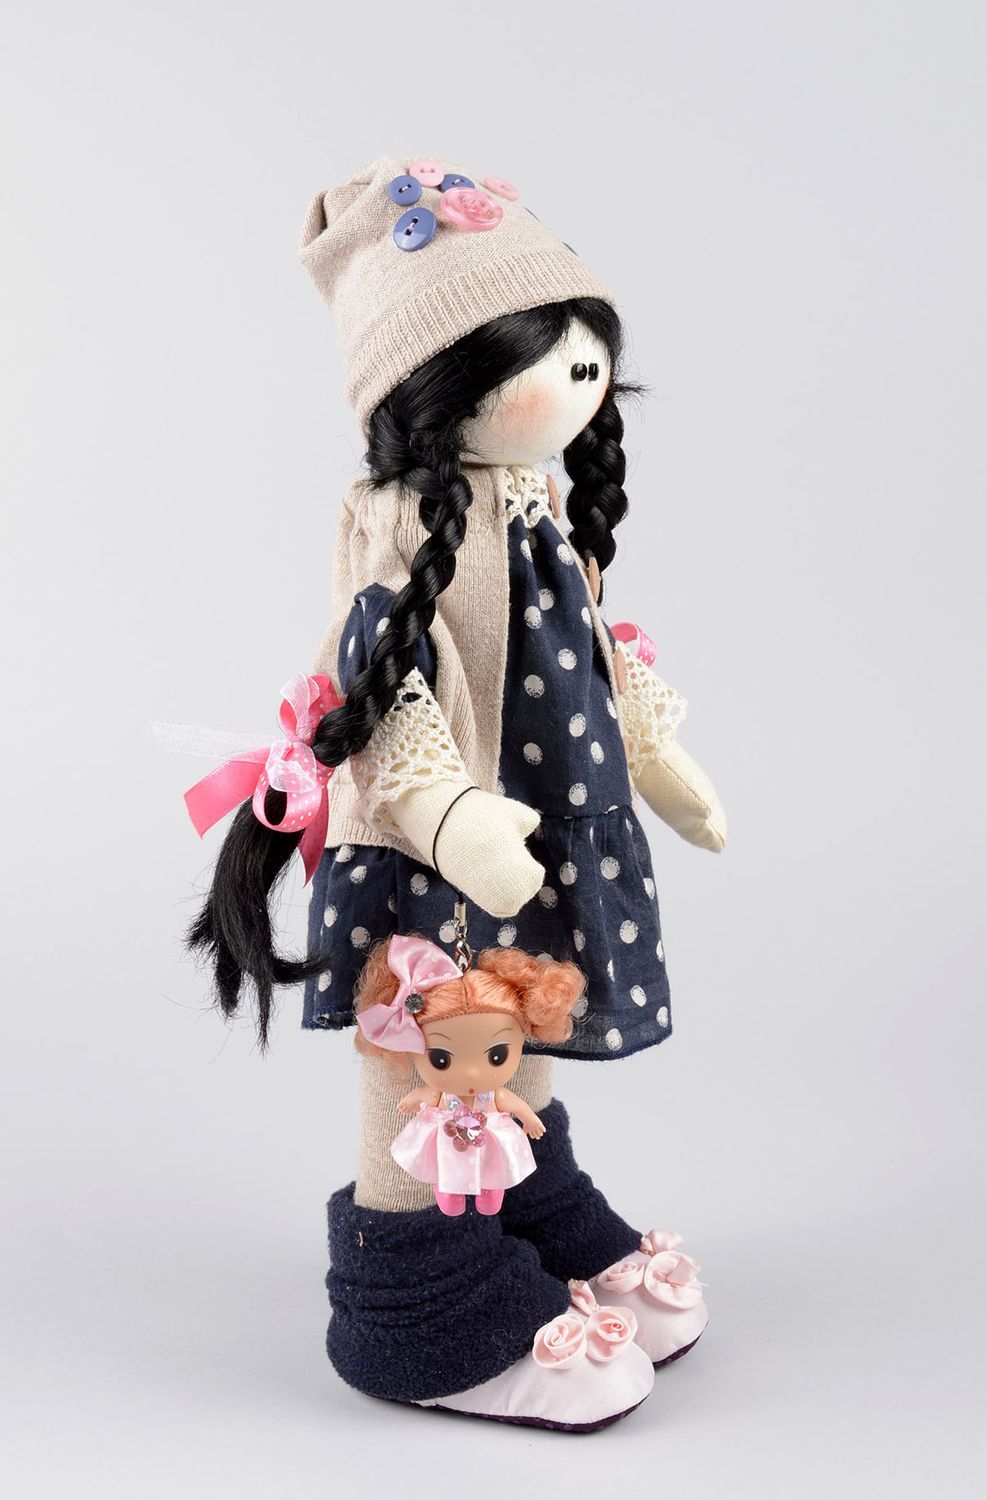 Handmade soft doll girl doll toys for kids nursery decor gifts for children photo 2